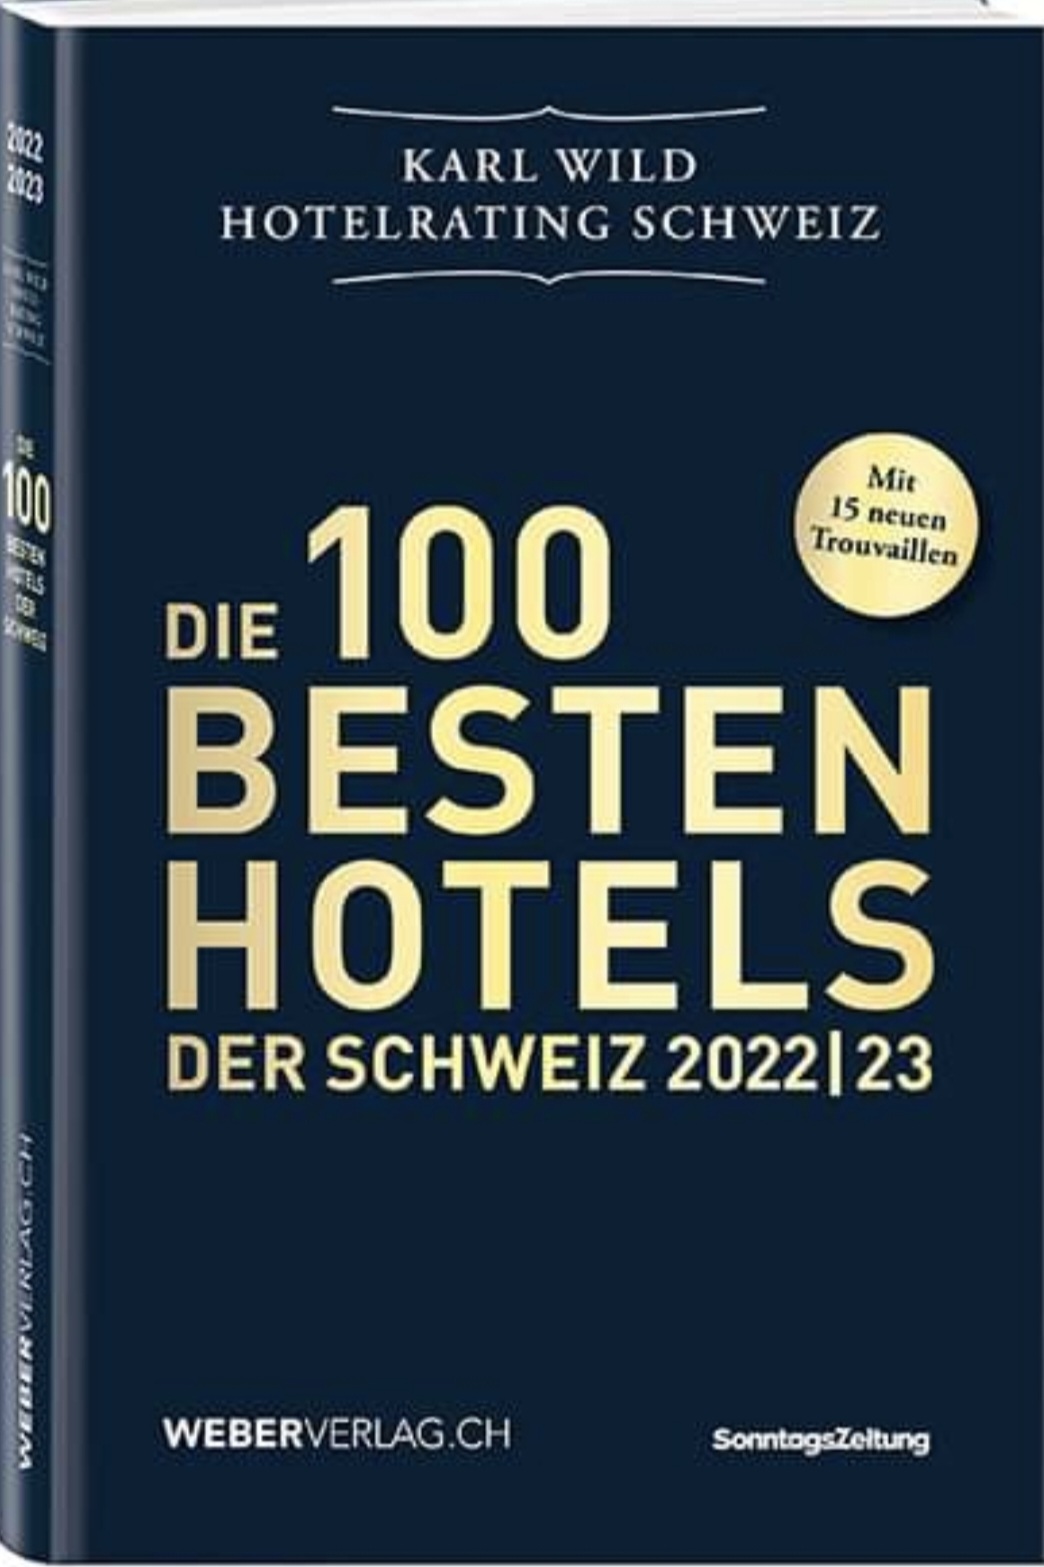 Karl Wild Die 100 besten Hotels der Schweiz